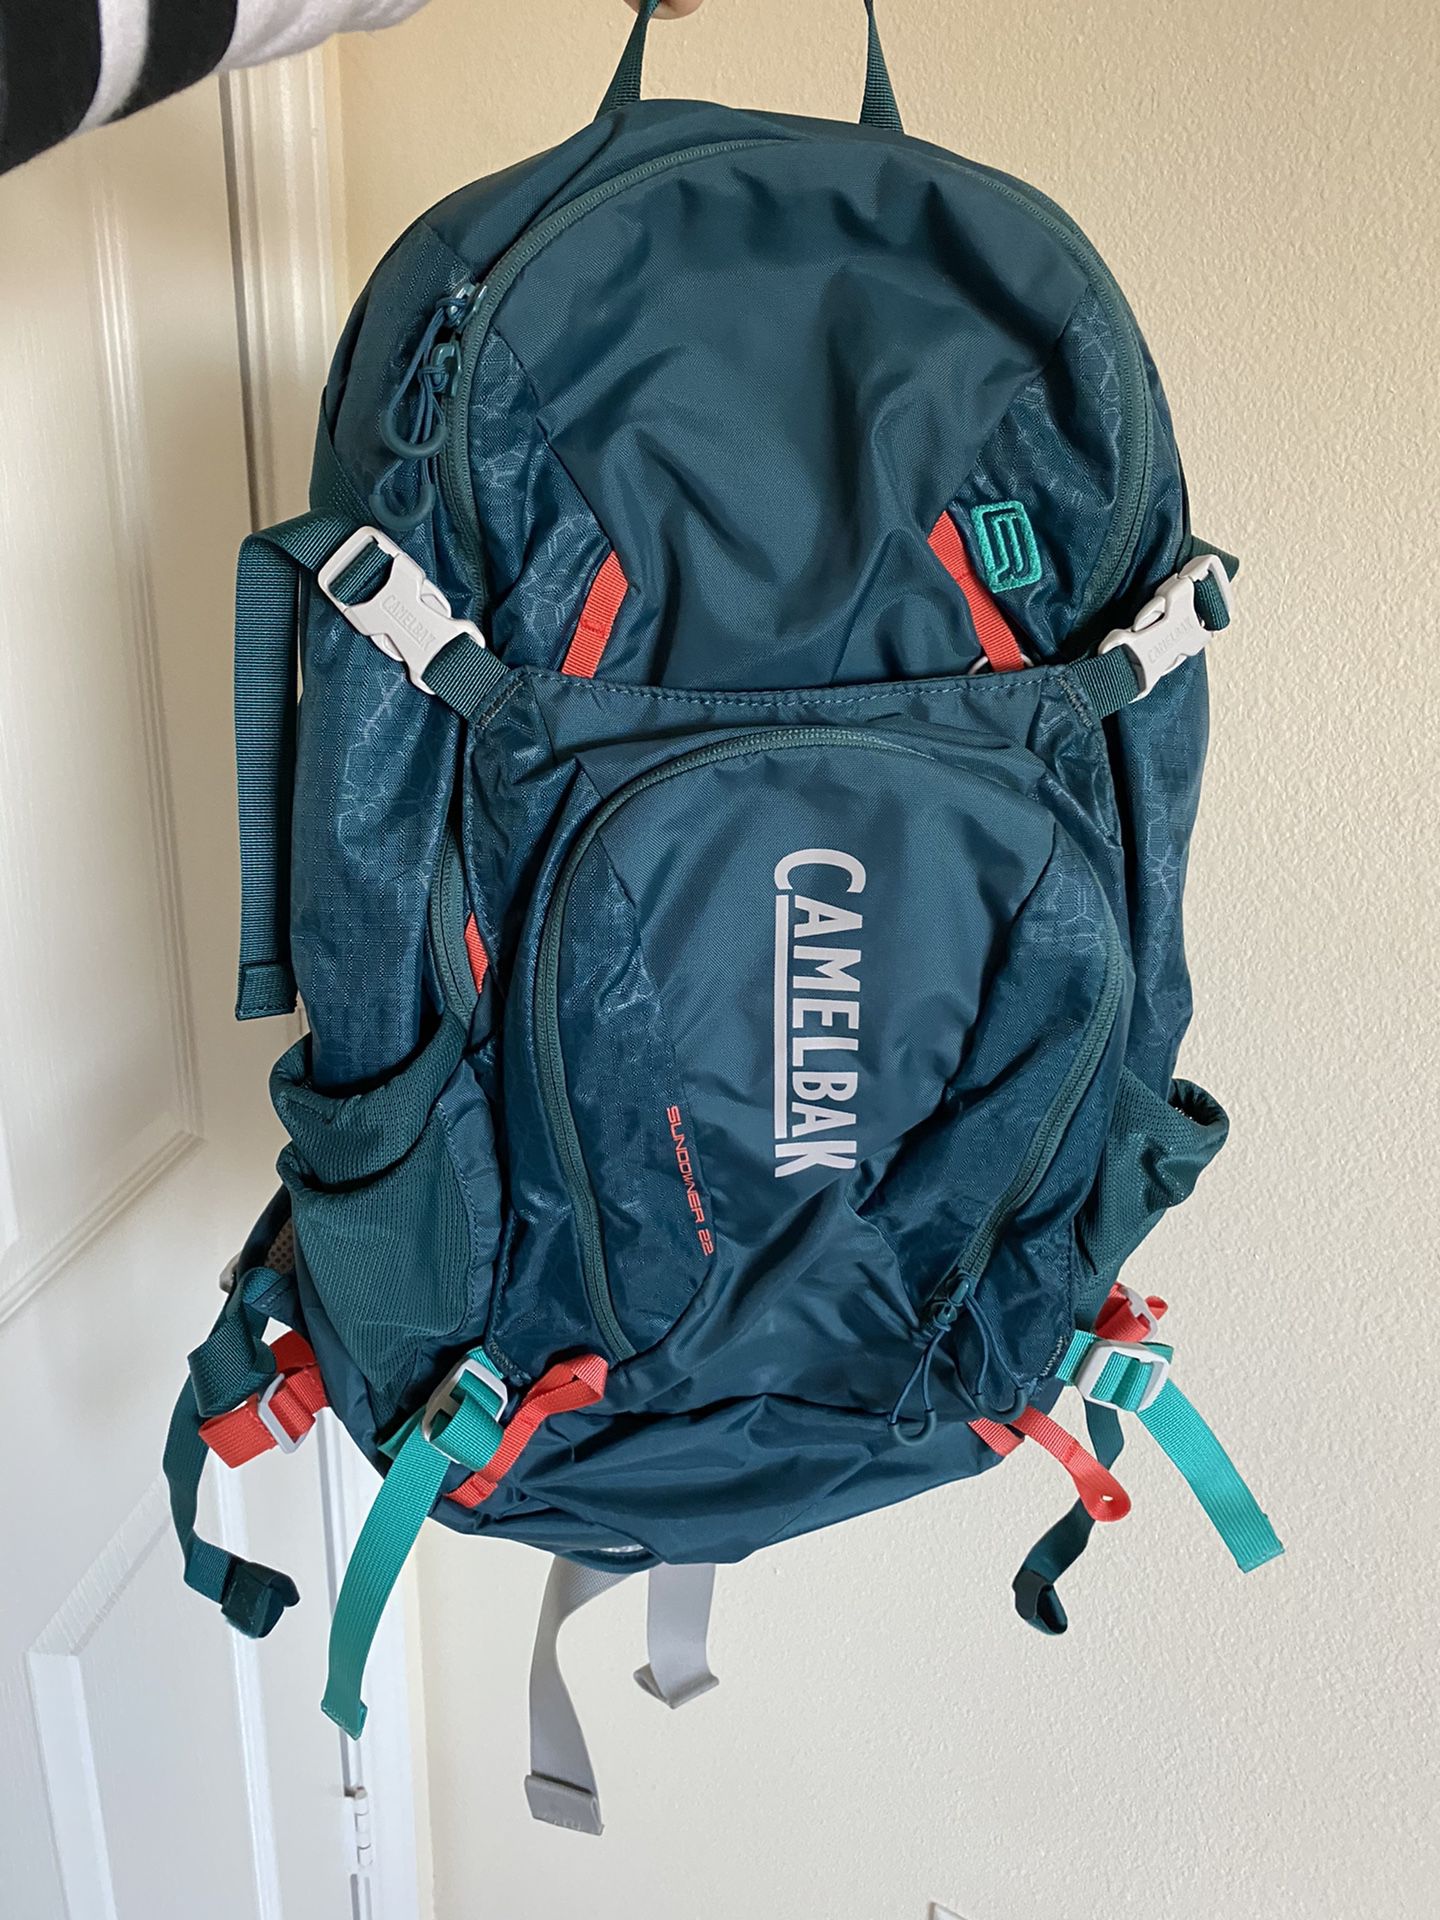 sundowner 22 backpack camelback